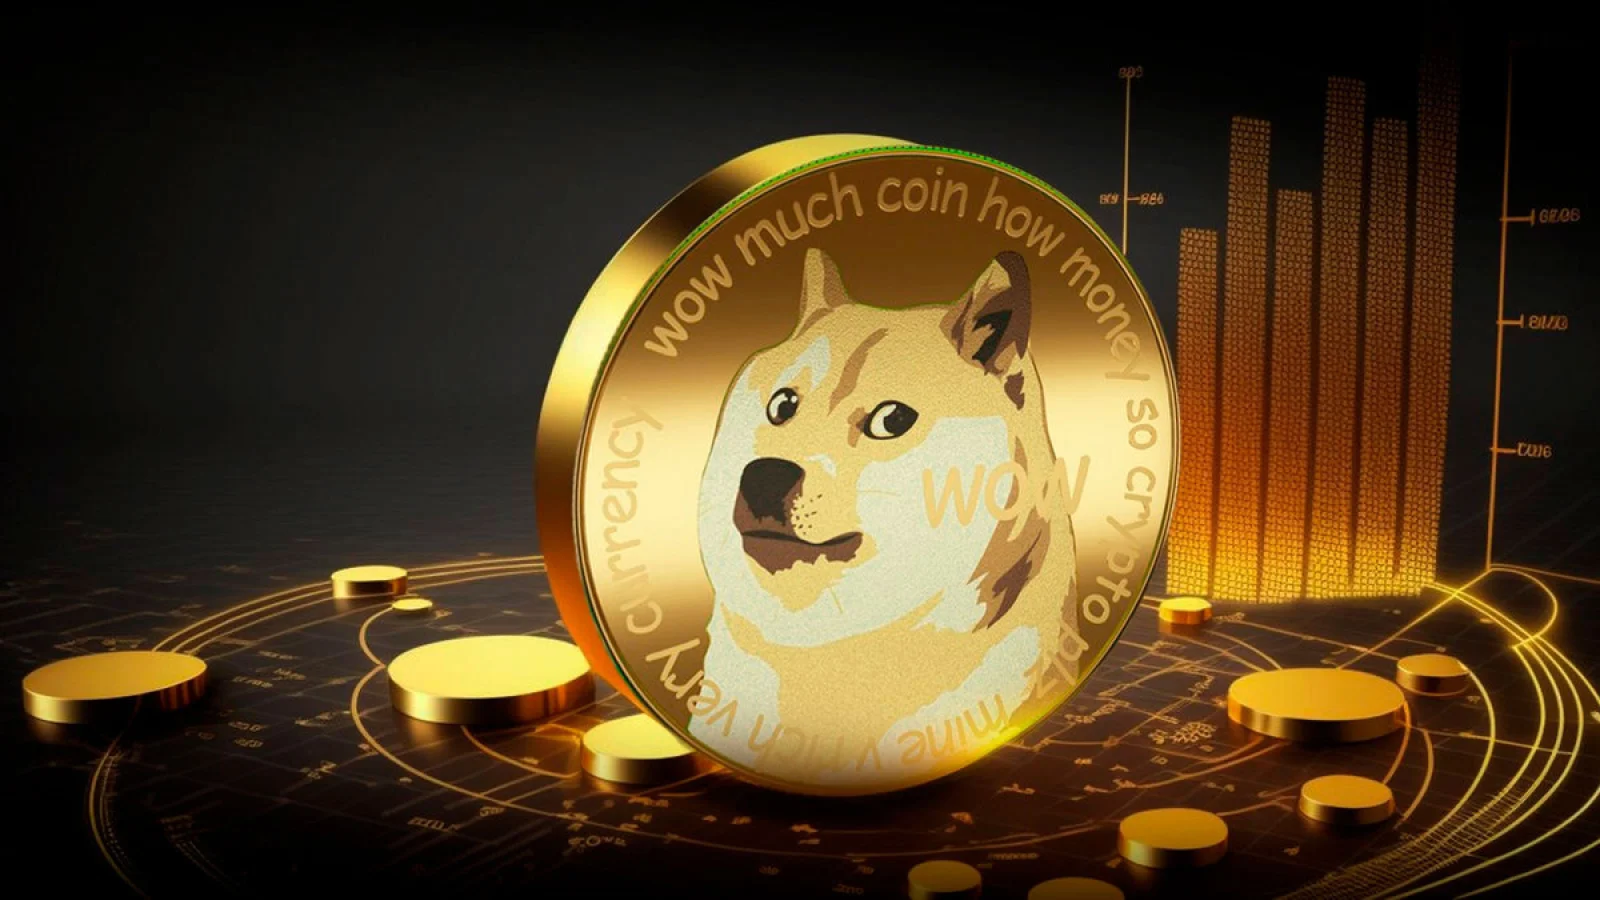 El analista de Dogecoin predice un posible aumento en el ciclo de reducción a la mitad y conocimientos técnicos